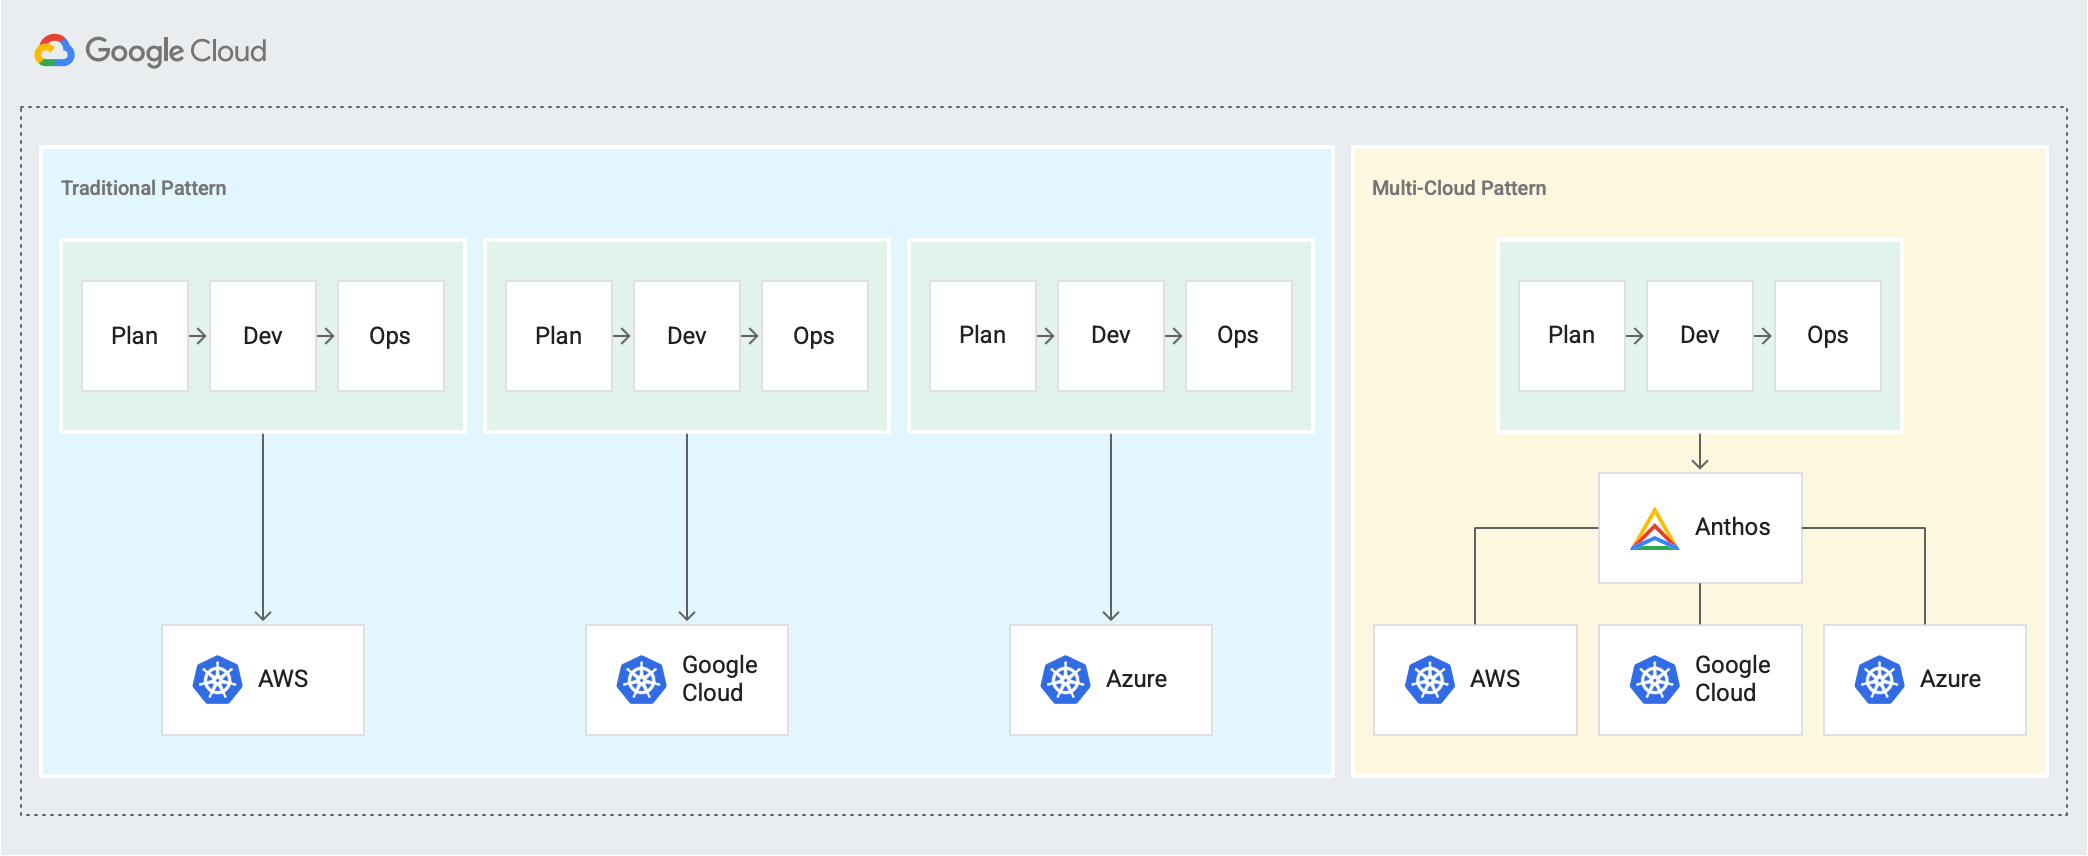 Présente un modèle traditionnel (plan → Développer → Exploiter les cycles pour AWS, Google Cloud et Azure) et un nouveau modèle multicloud où les cycles Planifier → Développer → Exploiter sont connectés via Anthos.